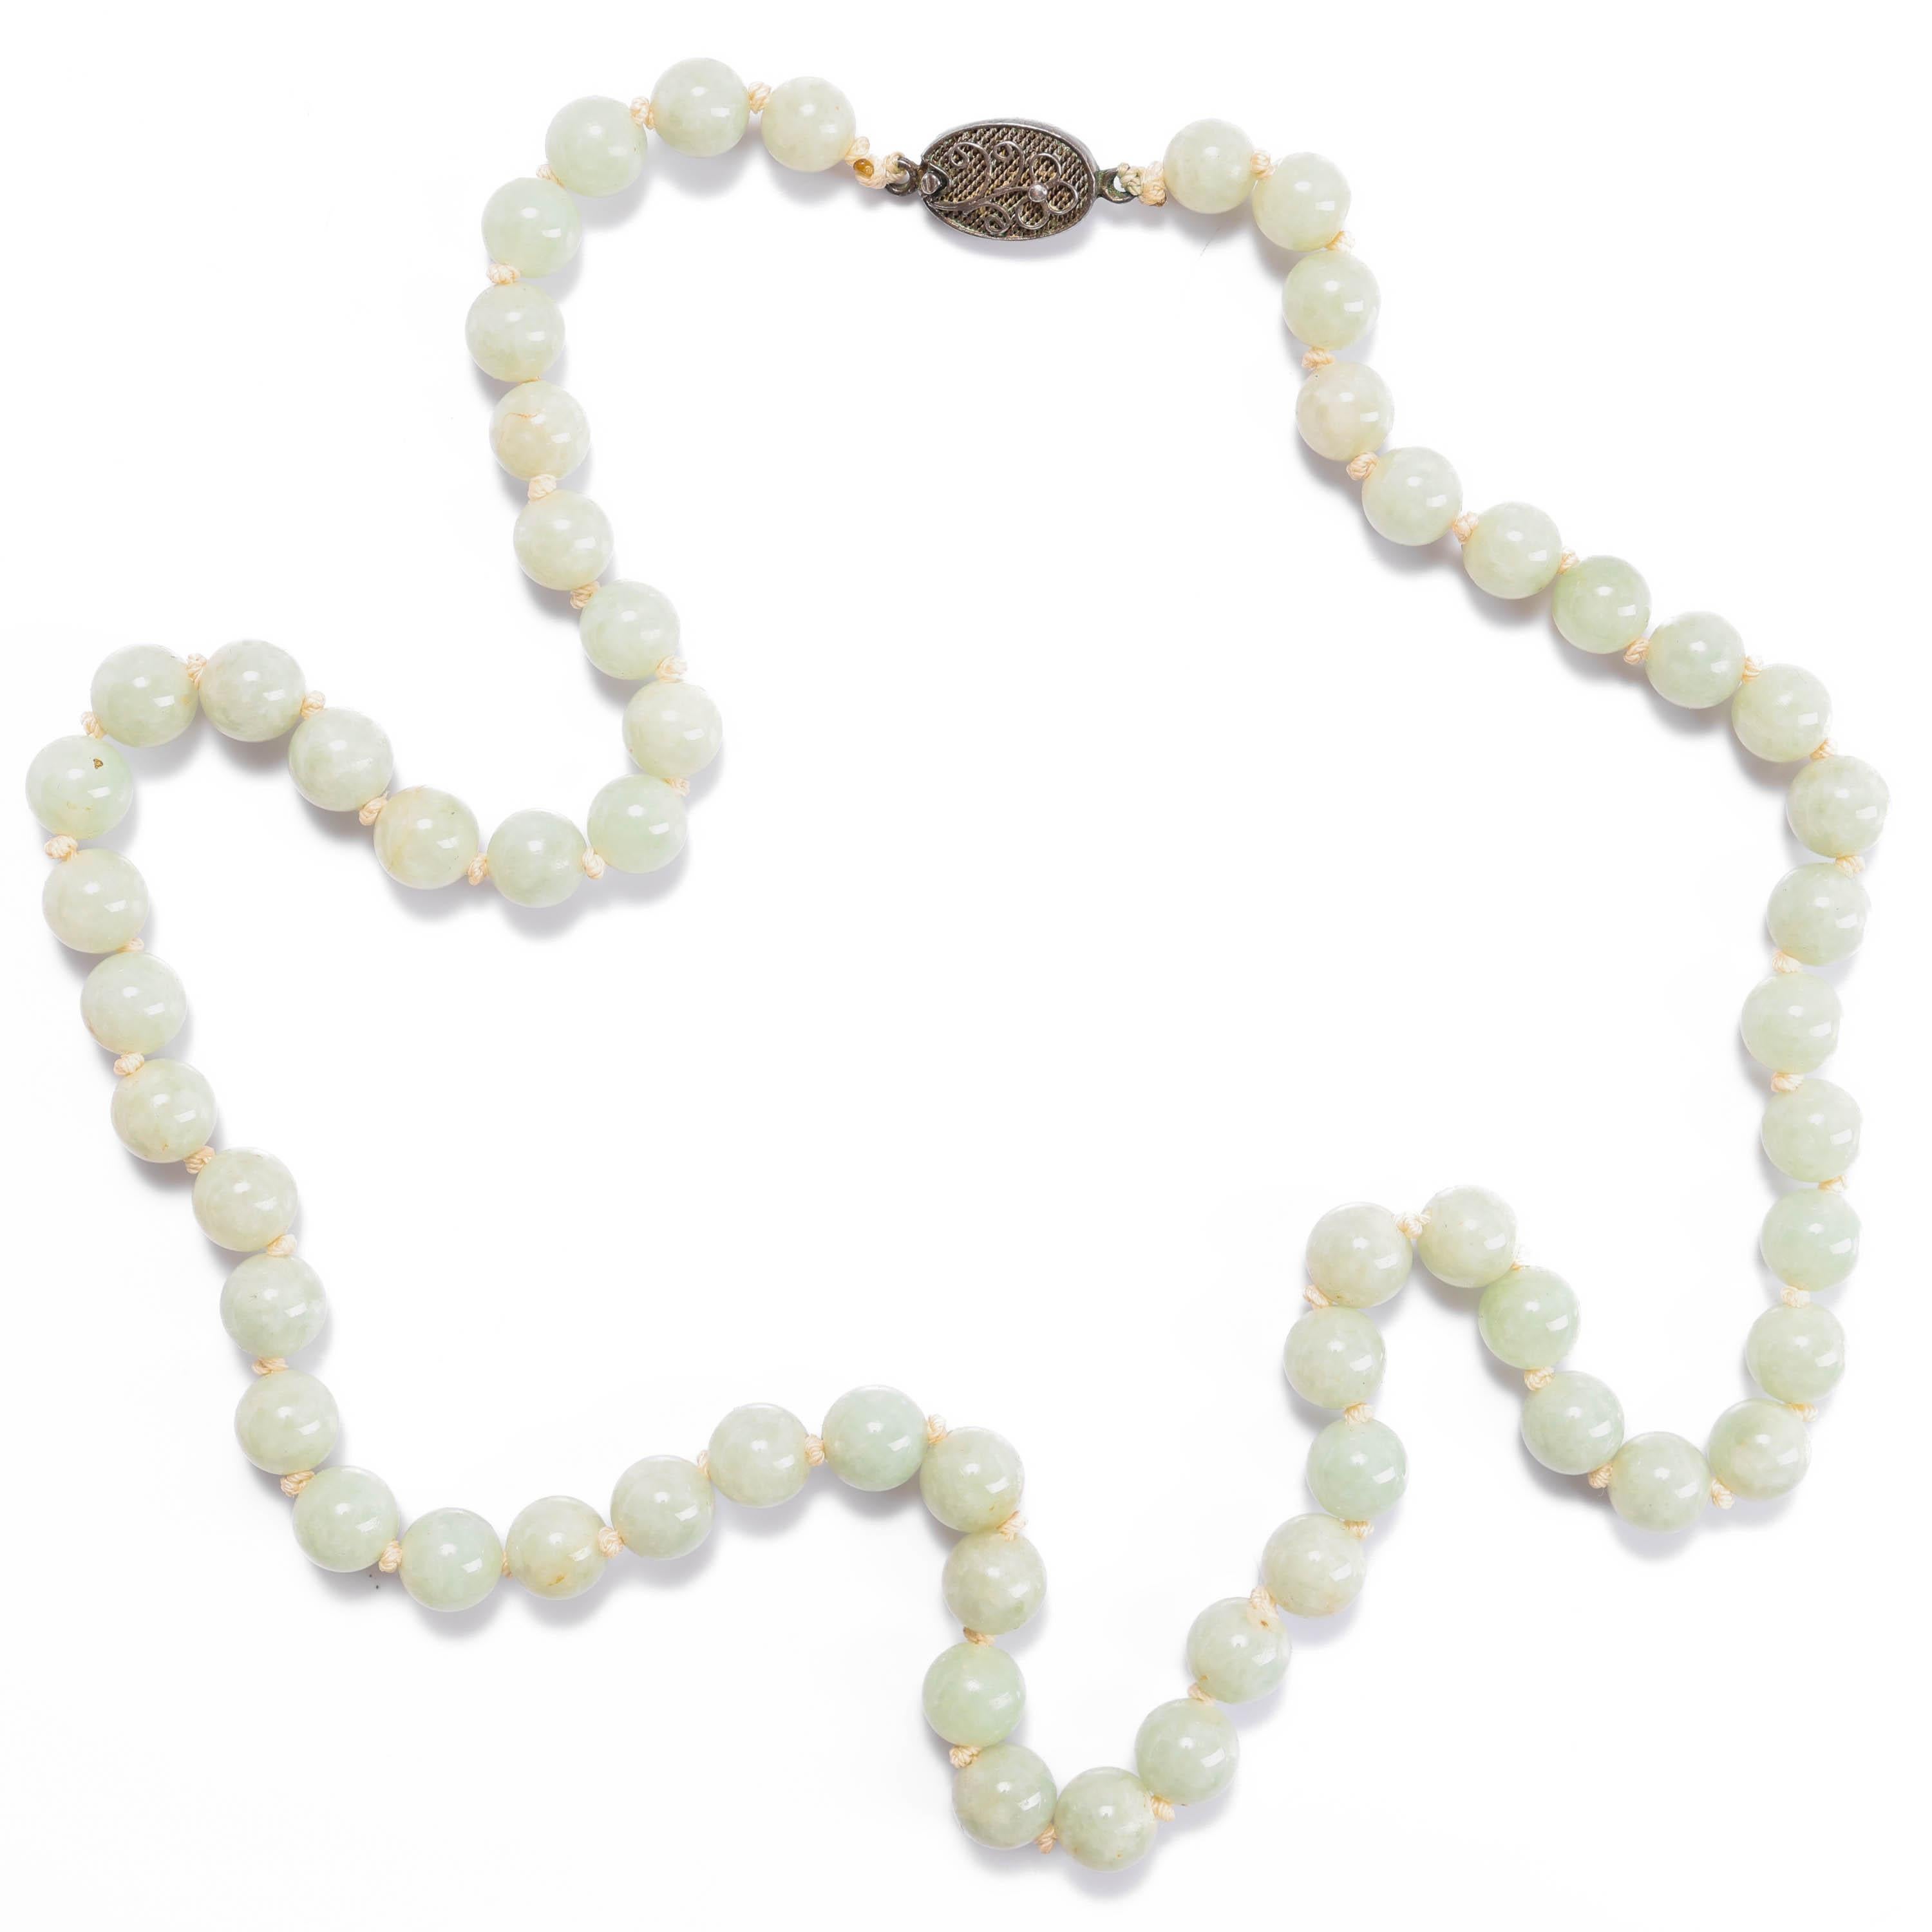 Dieser 23 Zoll lange Strang aus natürlichen, unbehandelten burmesischen Jadeit-Perlen wurde zwischen 1910 und 1920 von Hand gefertigt und mag dem Uneingeweihten vielleicht unscheinbar erscheinen. Aber für diejenigen unter Ihnen, die Jade kennen und